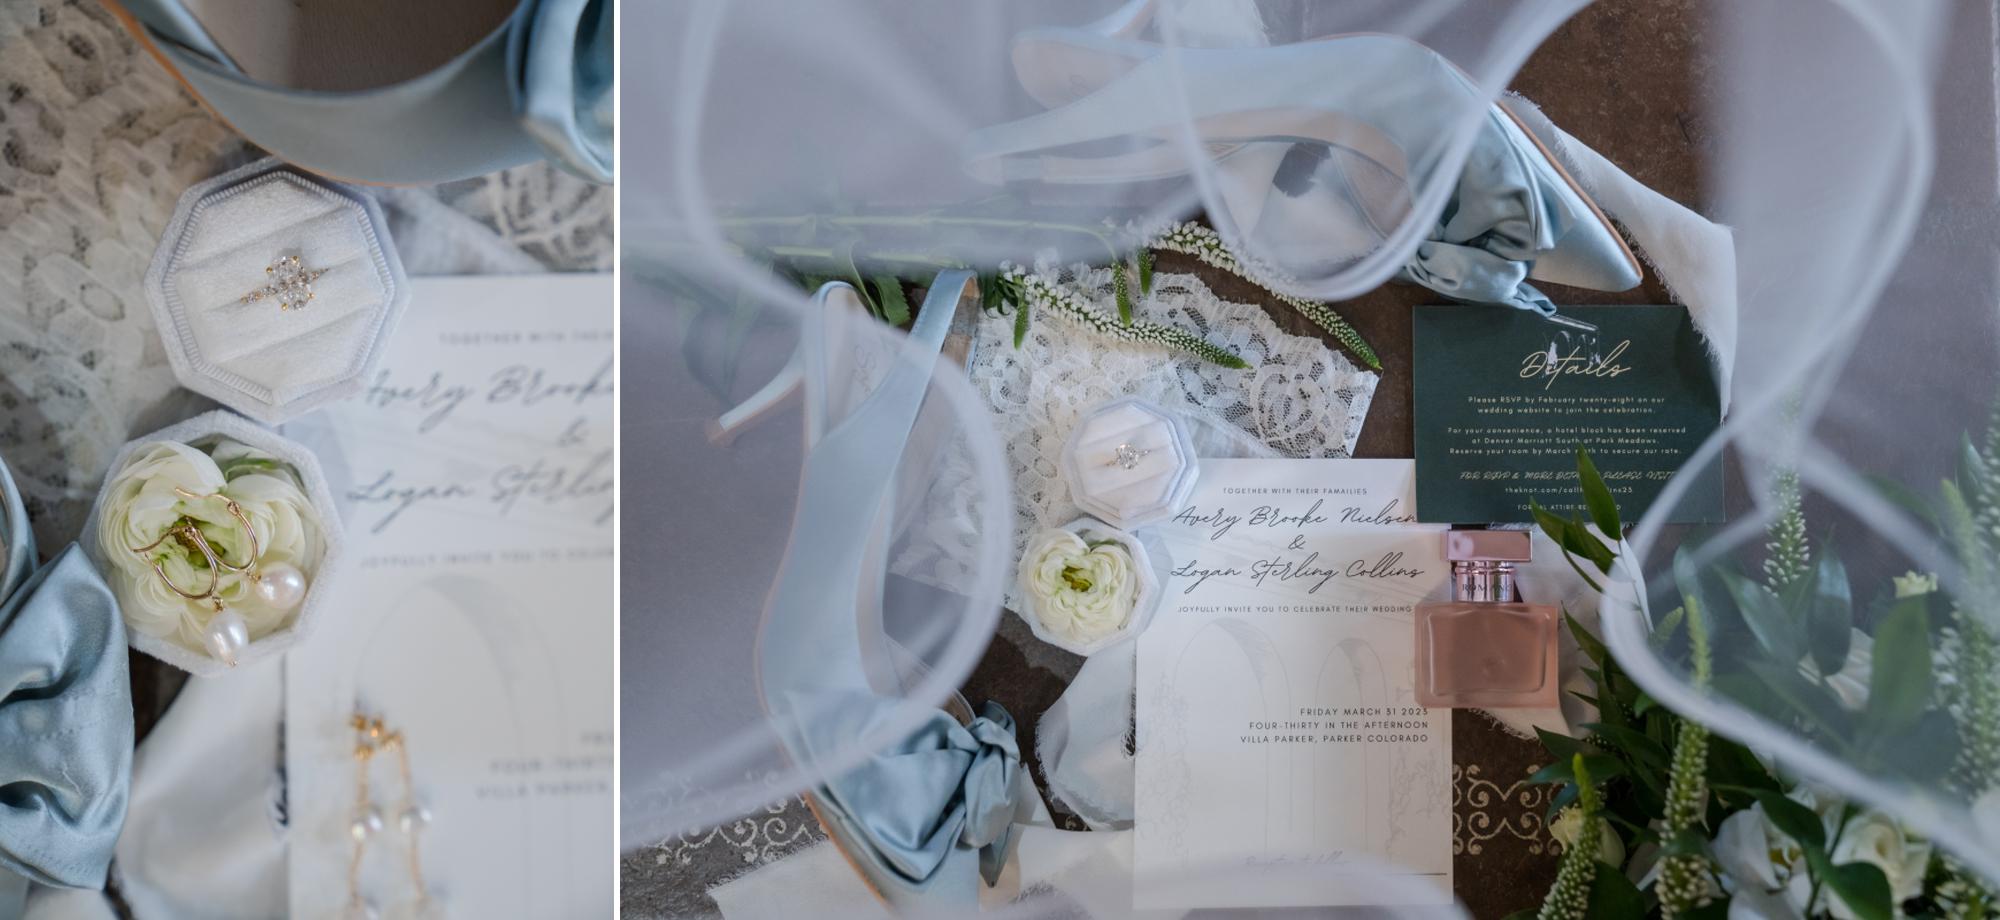 Elegant, Dreamy Wedding Details